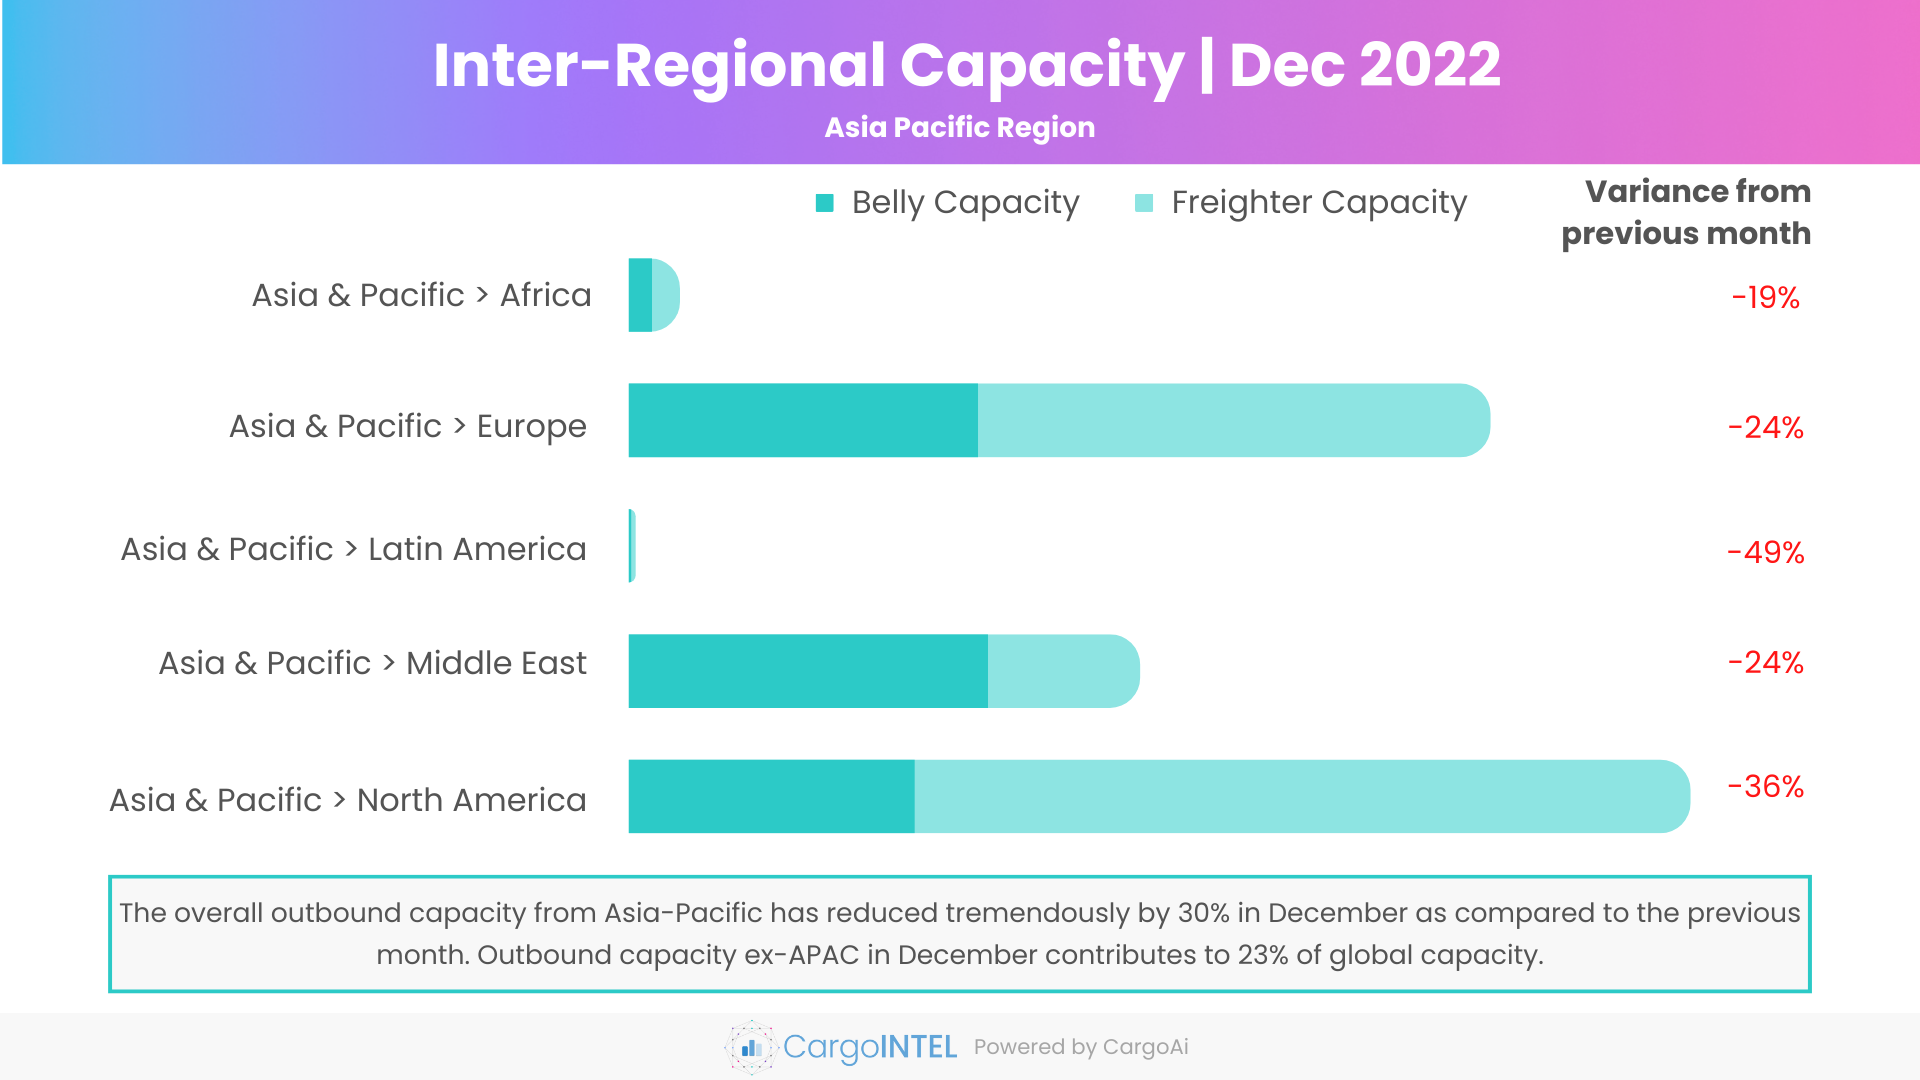 Air cargo capacity of Asia Pacific region of Dec 2022